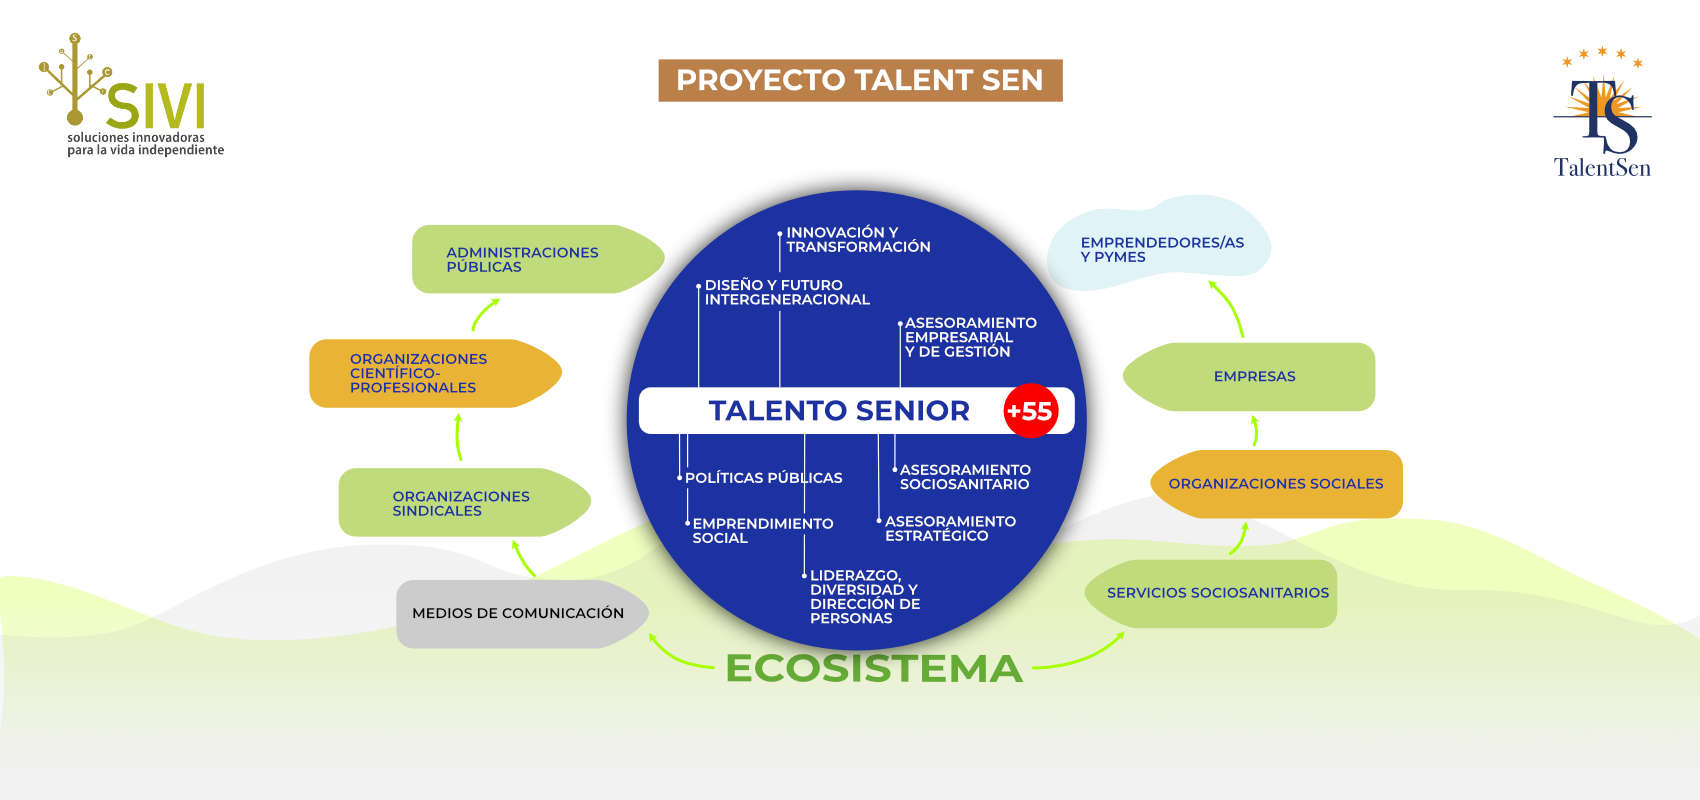 Proyecto Talent Sen